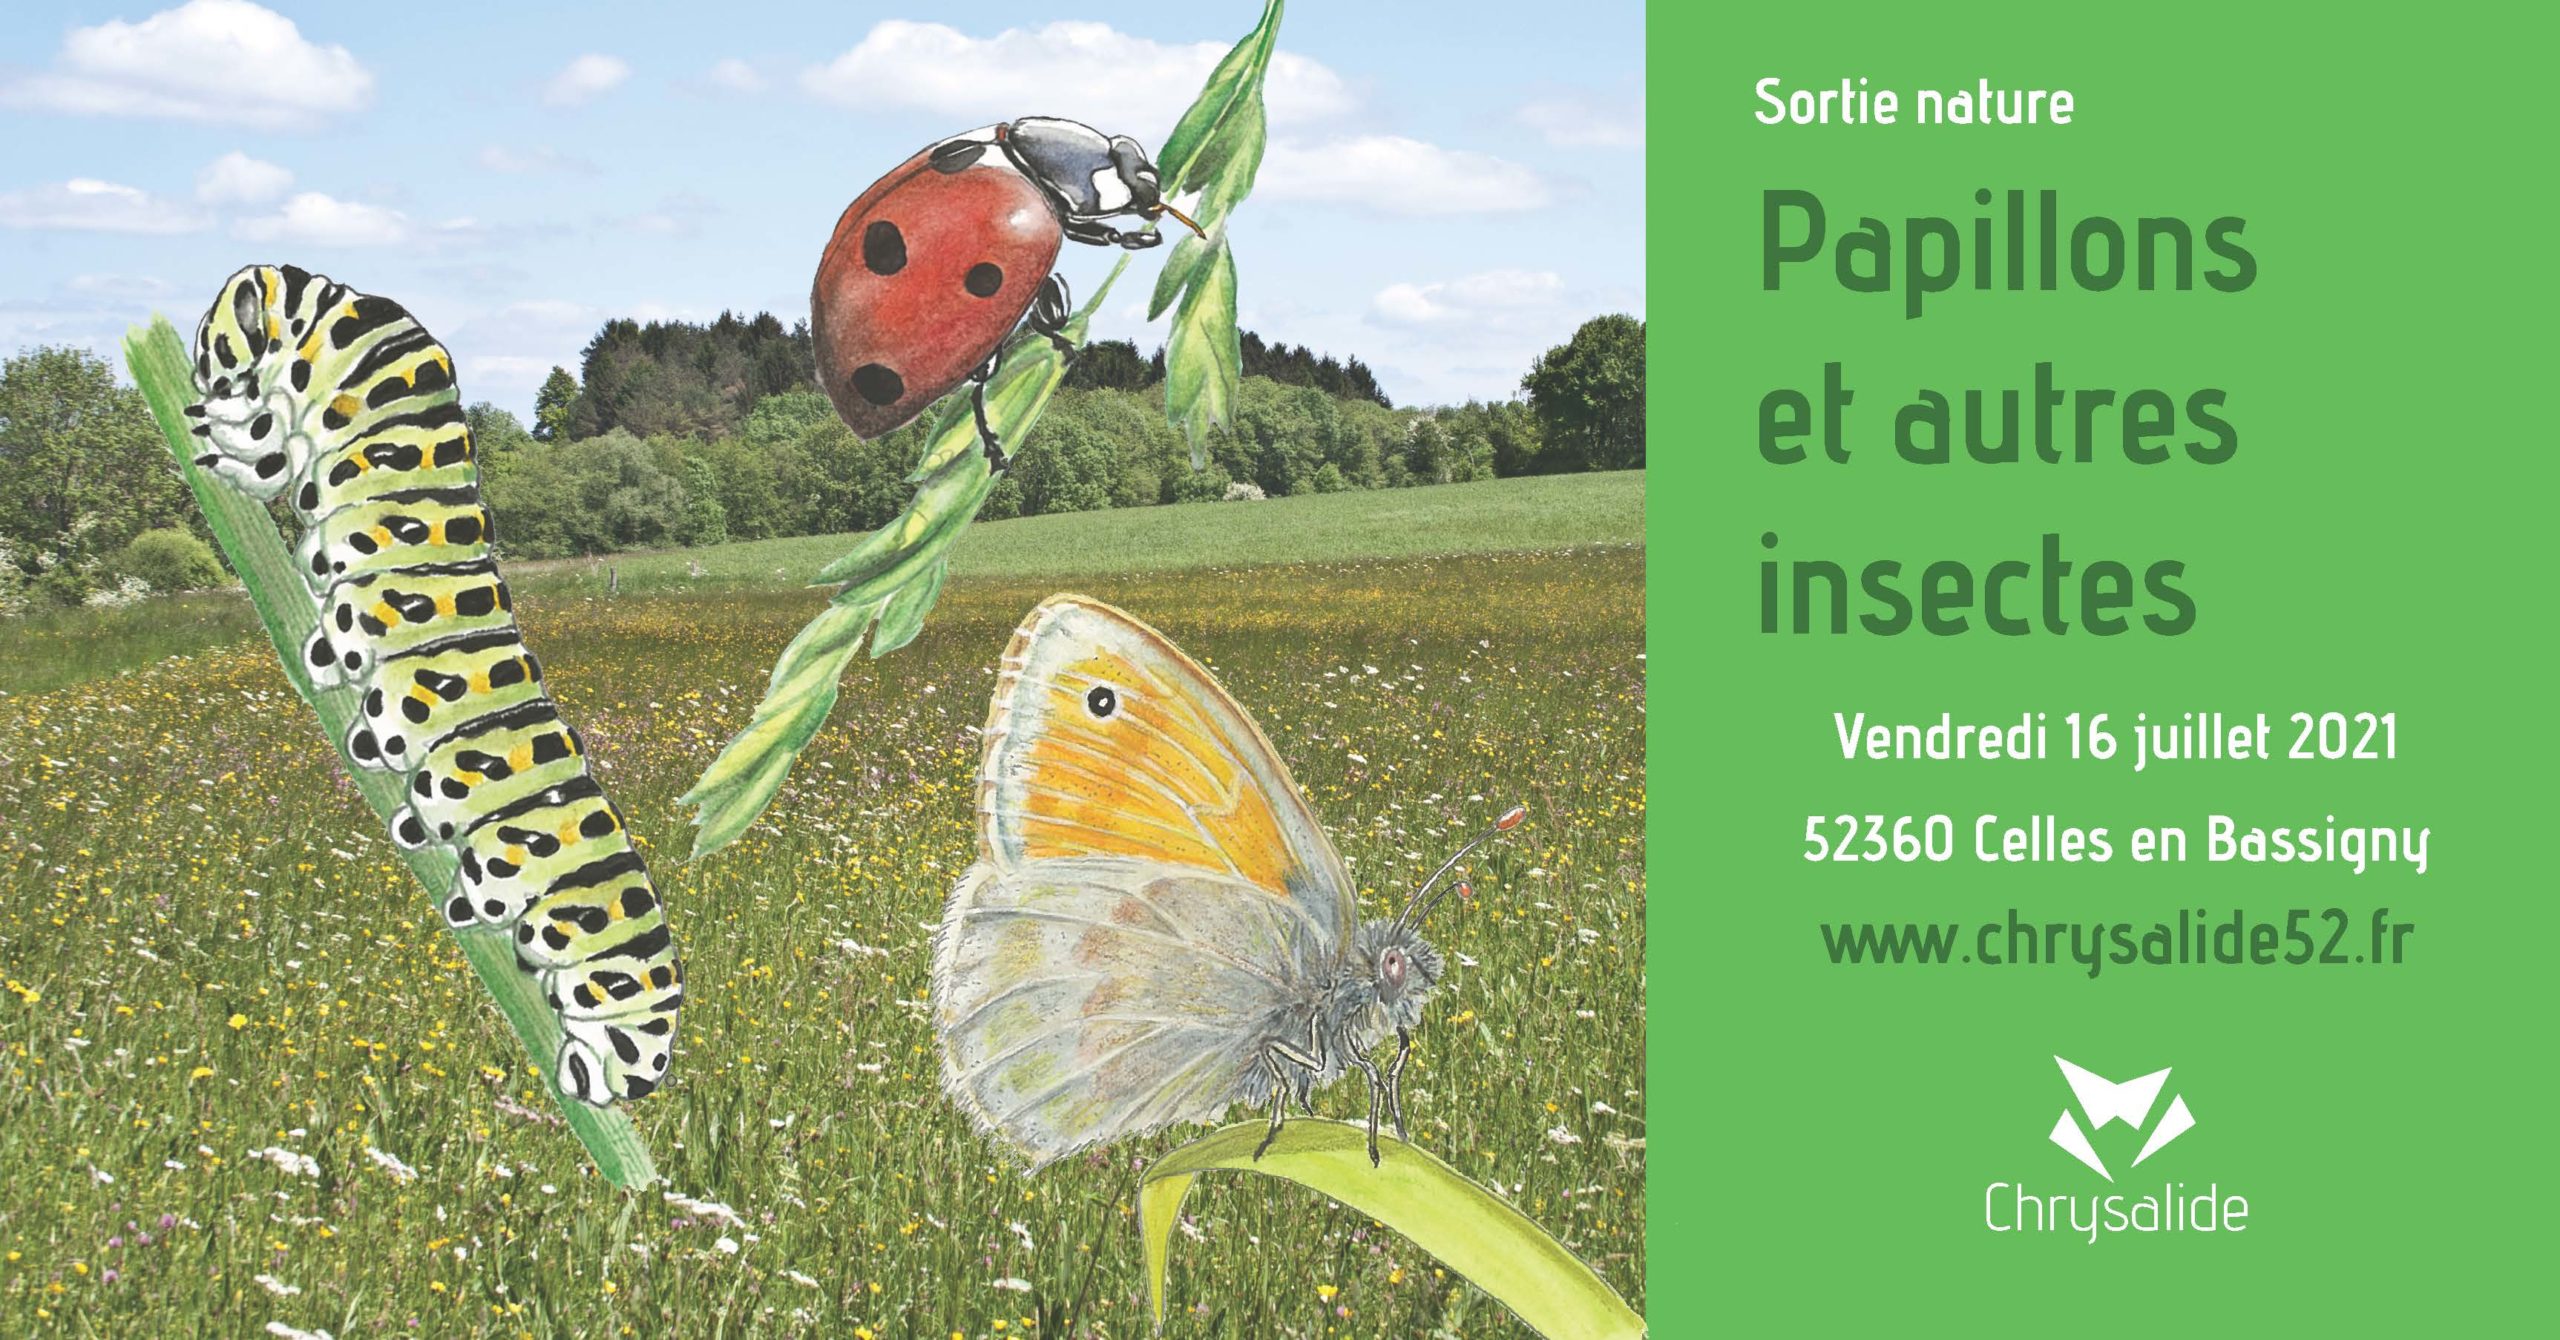 Sortie nature - Papillons et autres insectes- Chrysalide52 - Michael Geber - Haute-Marne